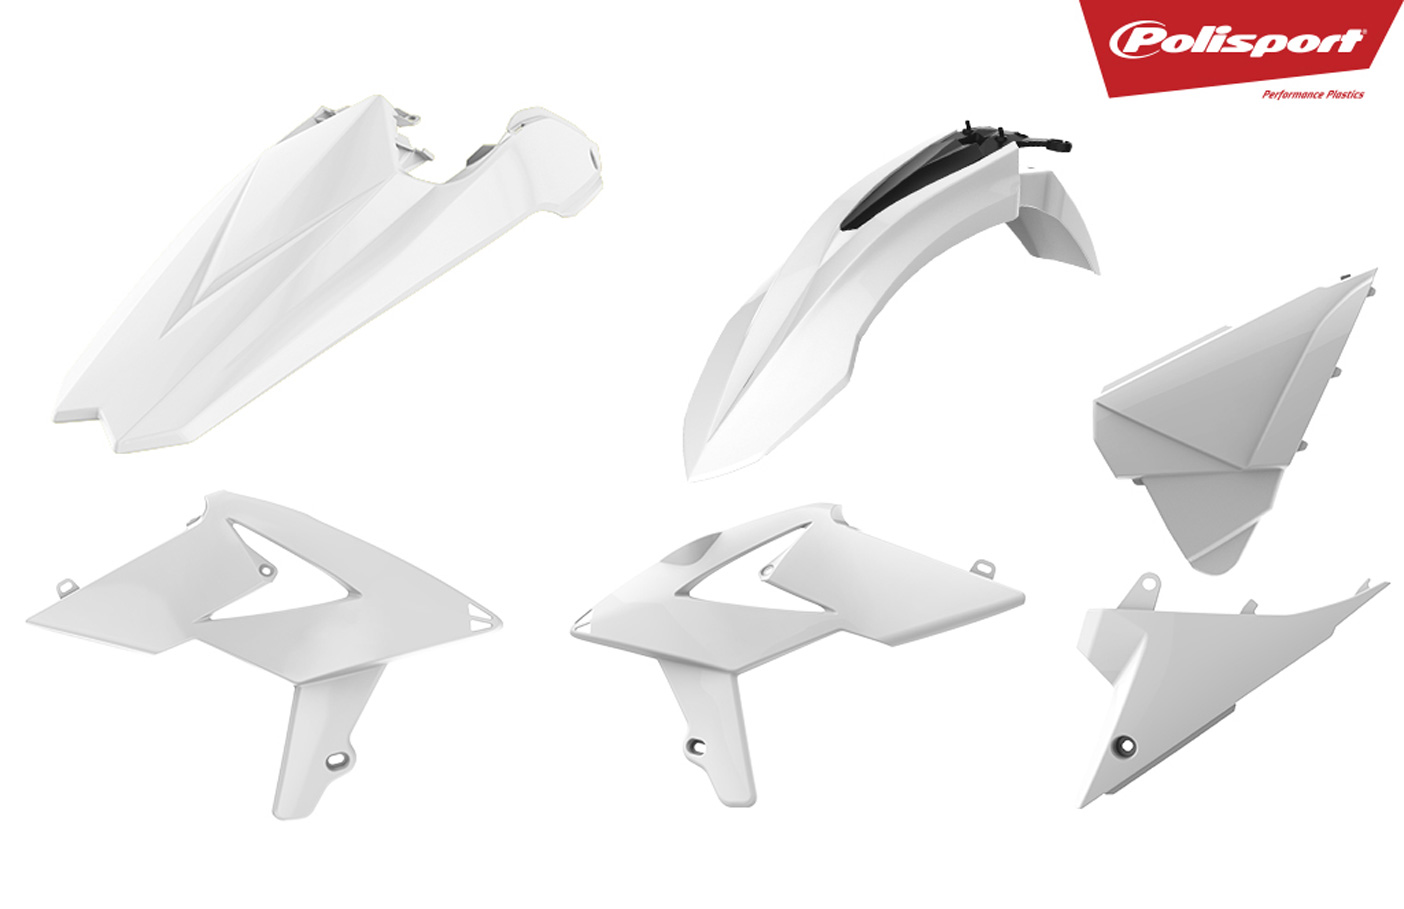 Plastikteile für deine Beta RR in weiß, bestehend aus Frontkotflügel, Heckkotflügel, Tankspoiler und Seitenteilen